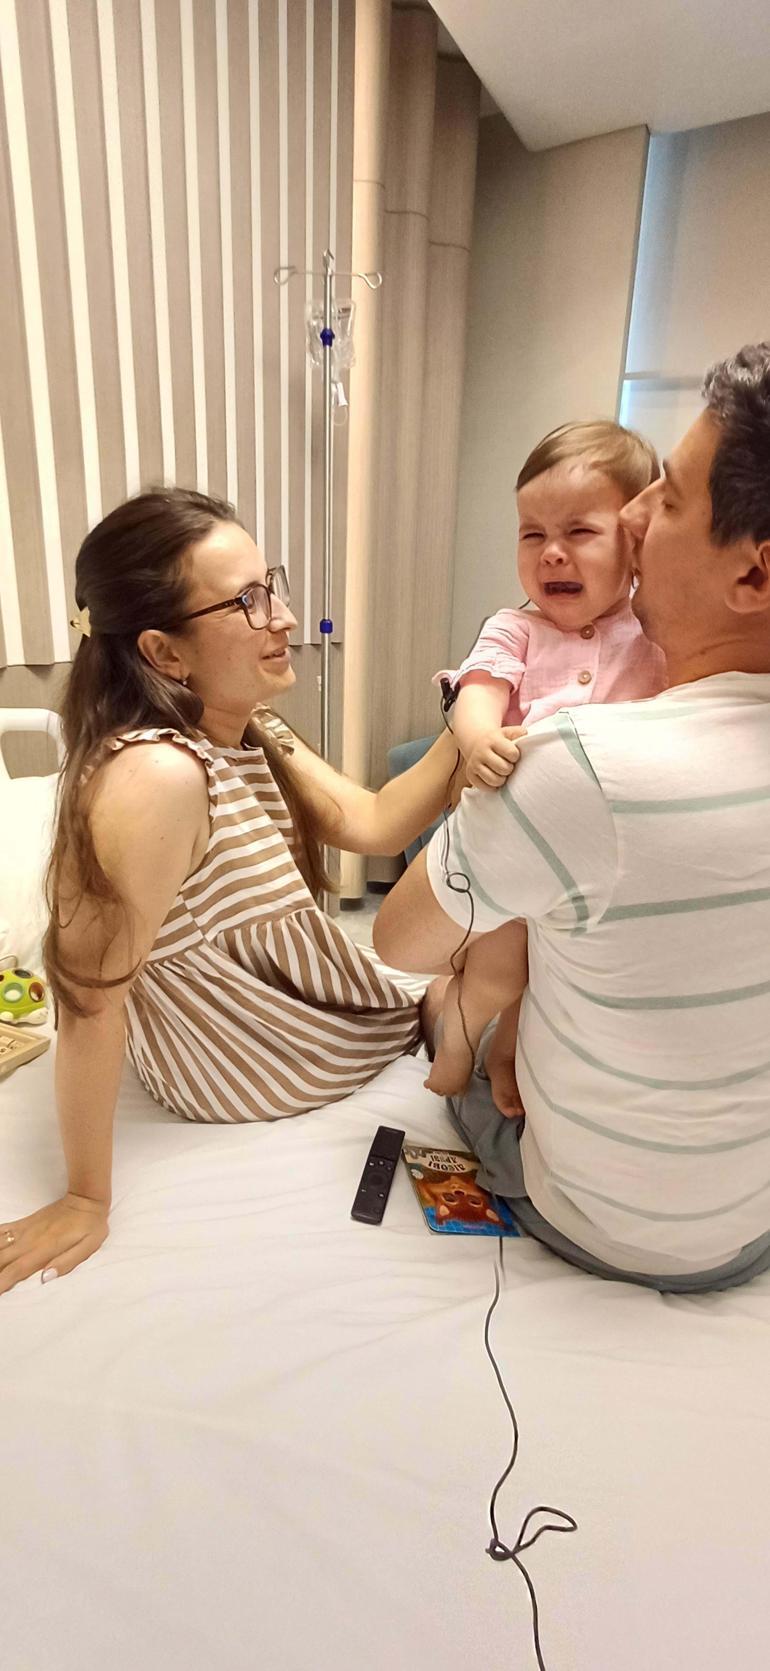 Ukraynalı bebek, 15 ay sonra duymaya başladı